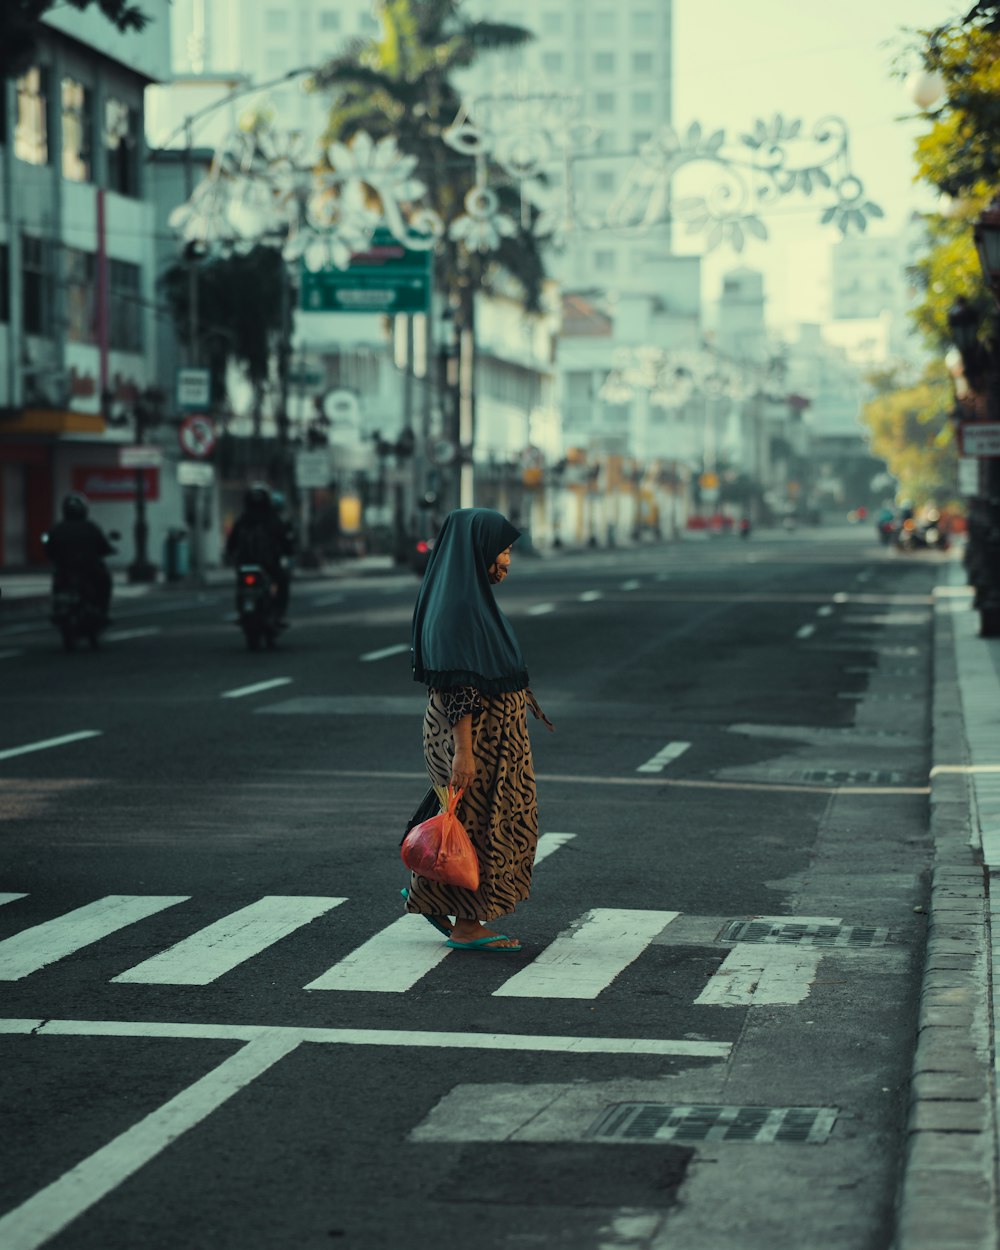 검은 히잡과 주황색 드레스를 입은 여자가 낮 동안 보행자 전용 도로를 걷고 있다